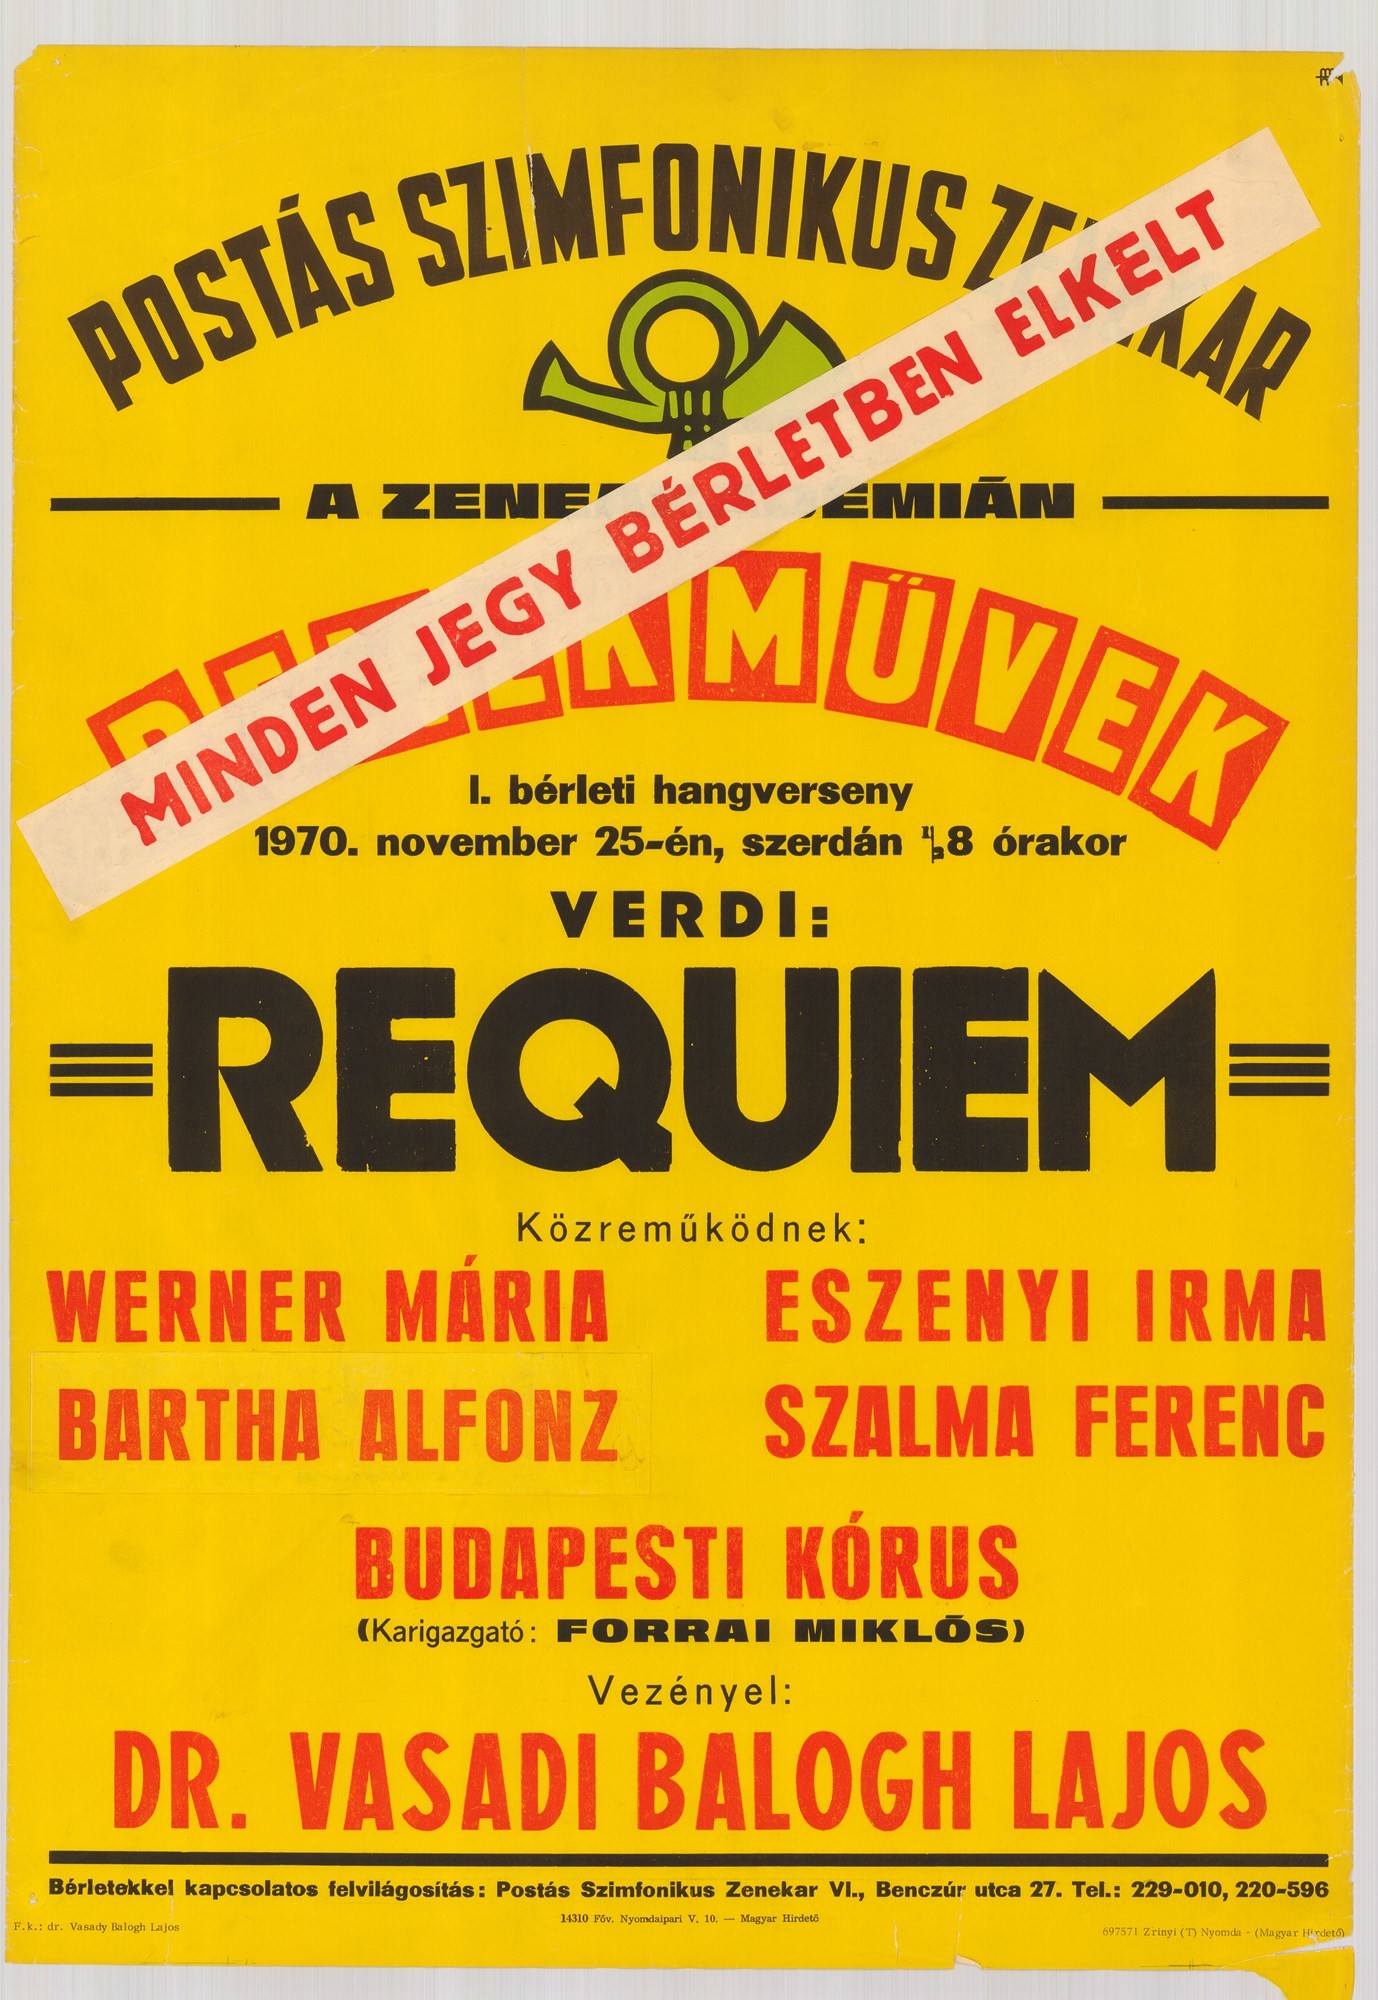 Plakát - Postás Szimfonikus Zenekar a Zeneakadémián, Remekművek, 1970 (Postamúzeum CC BY-NC-SA)